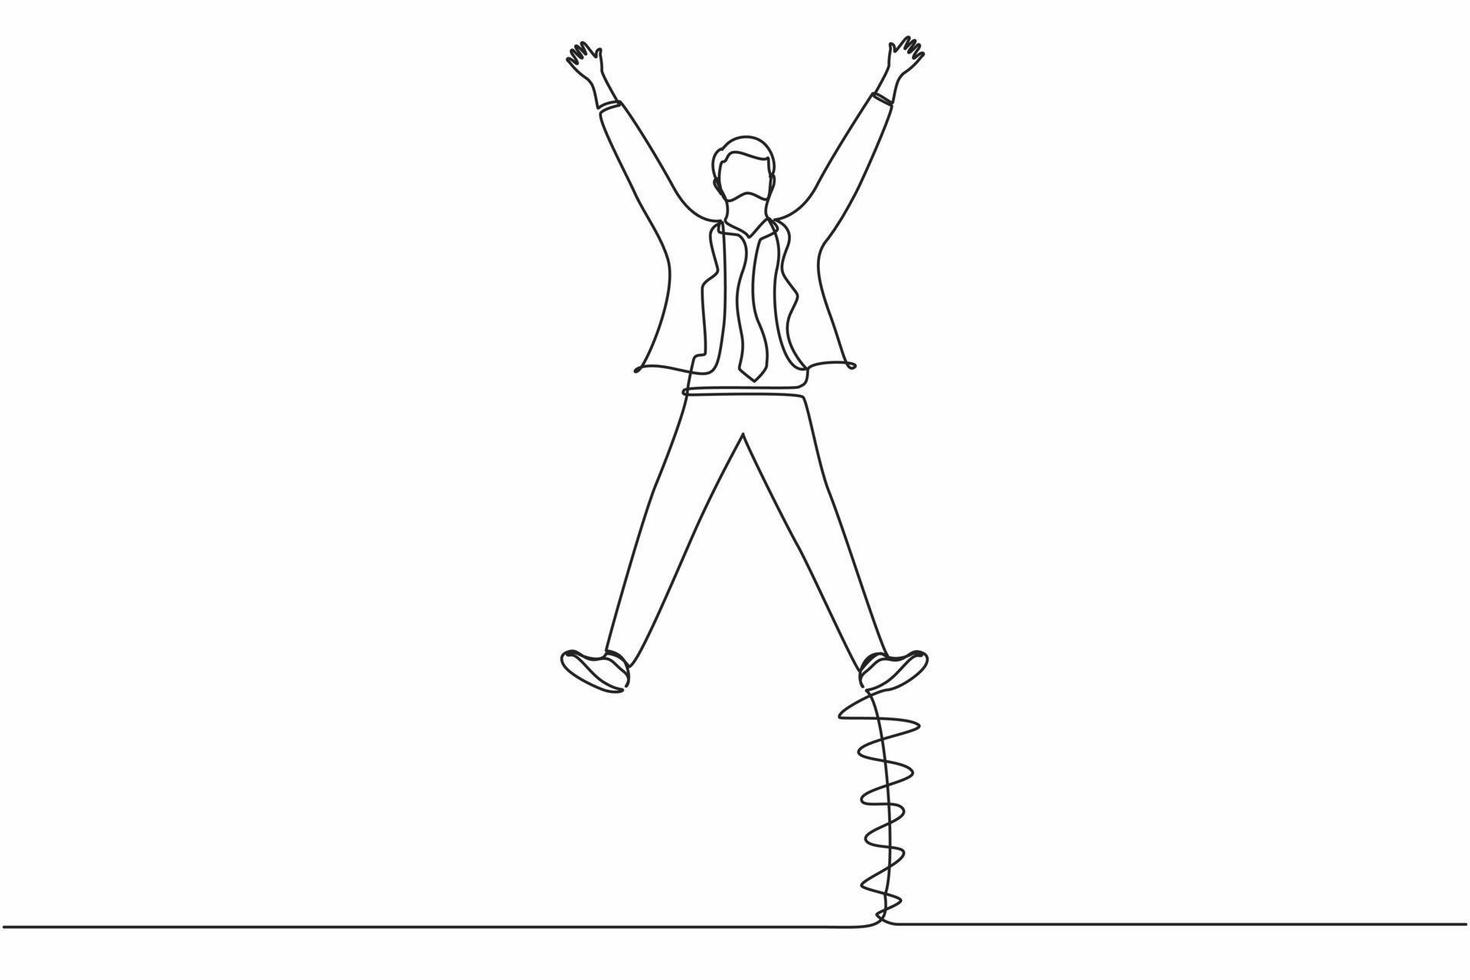 kontinuerlig en rad ritning glad affärsman hoppar med sprida sina armar och ben. ung kontorsarbetare fira framgången för företagets projekt. enda rad rita design vektorgrafisk illustration vektor